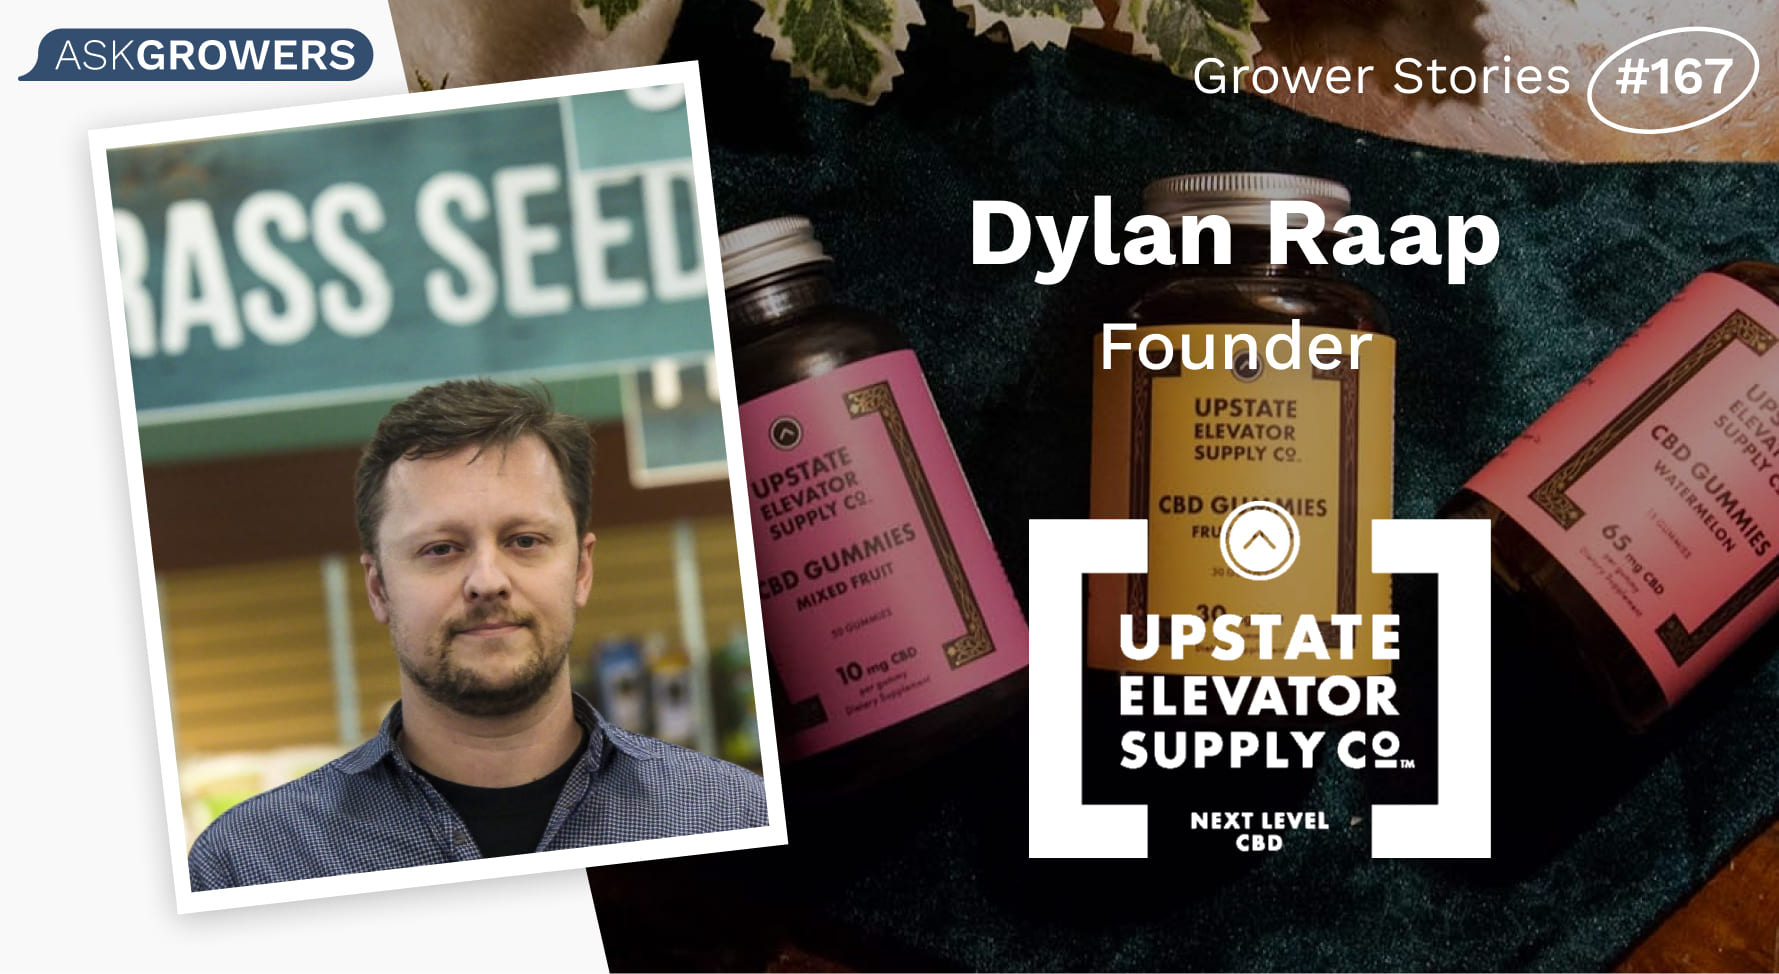 Grower Stories #167: Dylan Raap